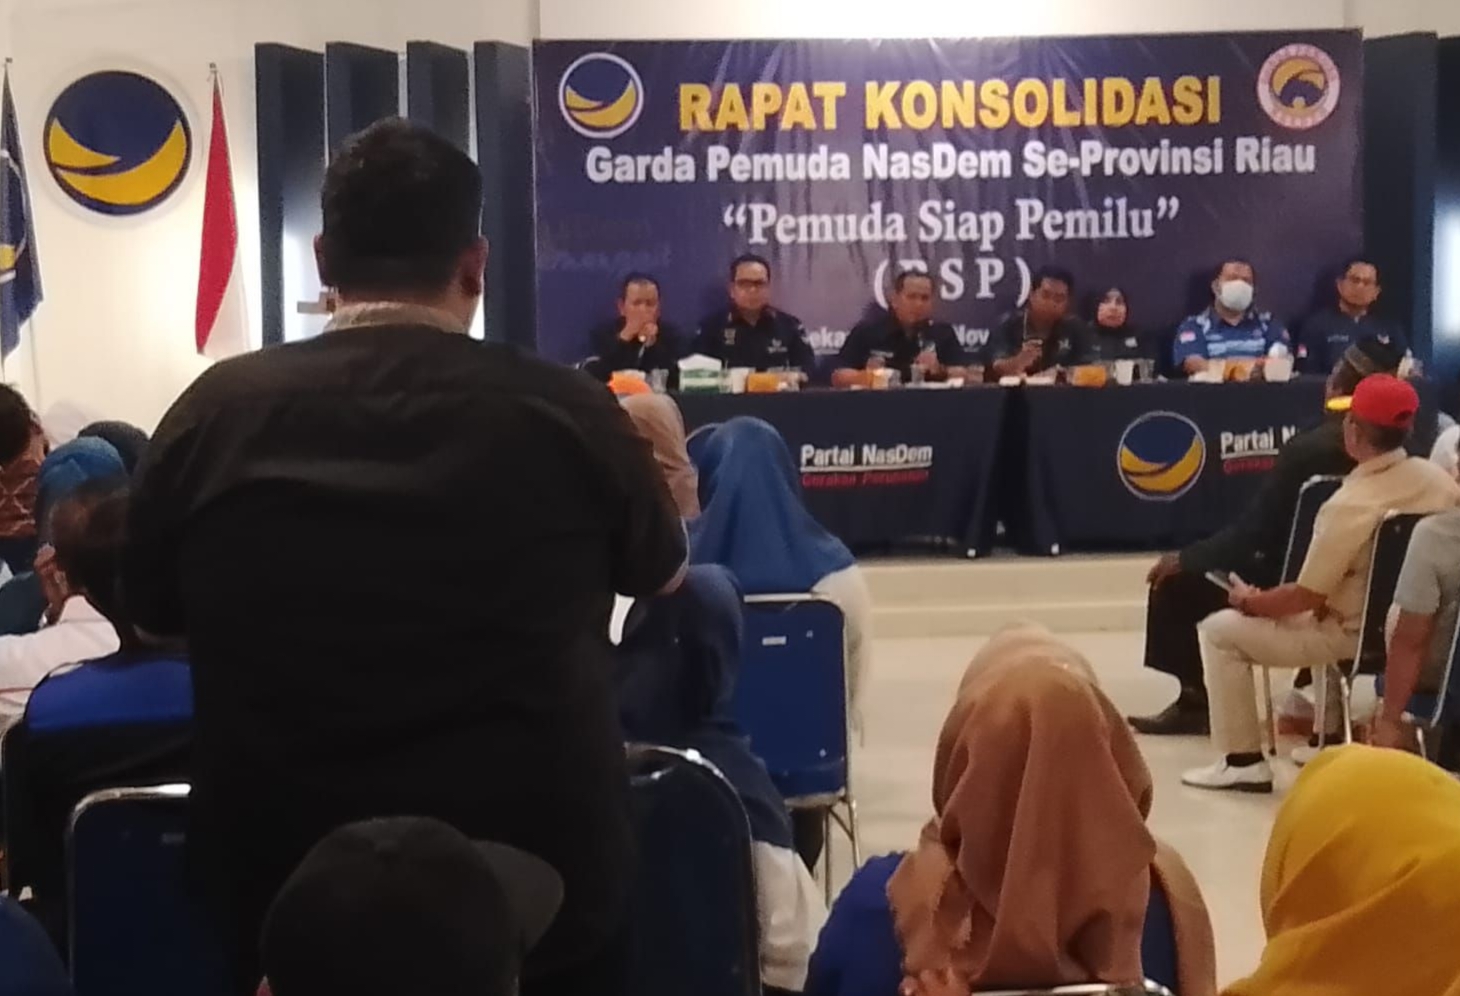 Anies Baswedan Dijadwalkan Awal Desember Berkunjung ke Riau